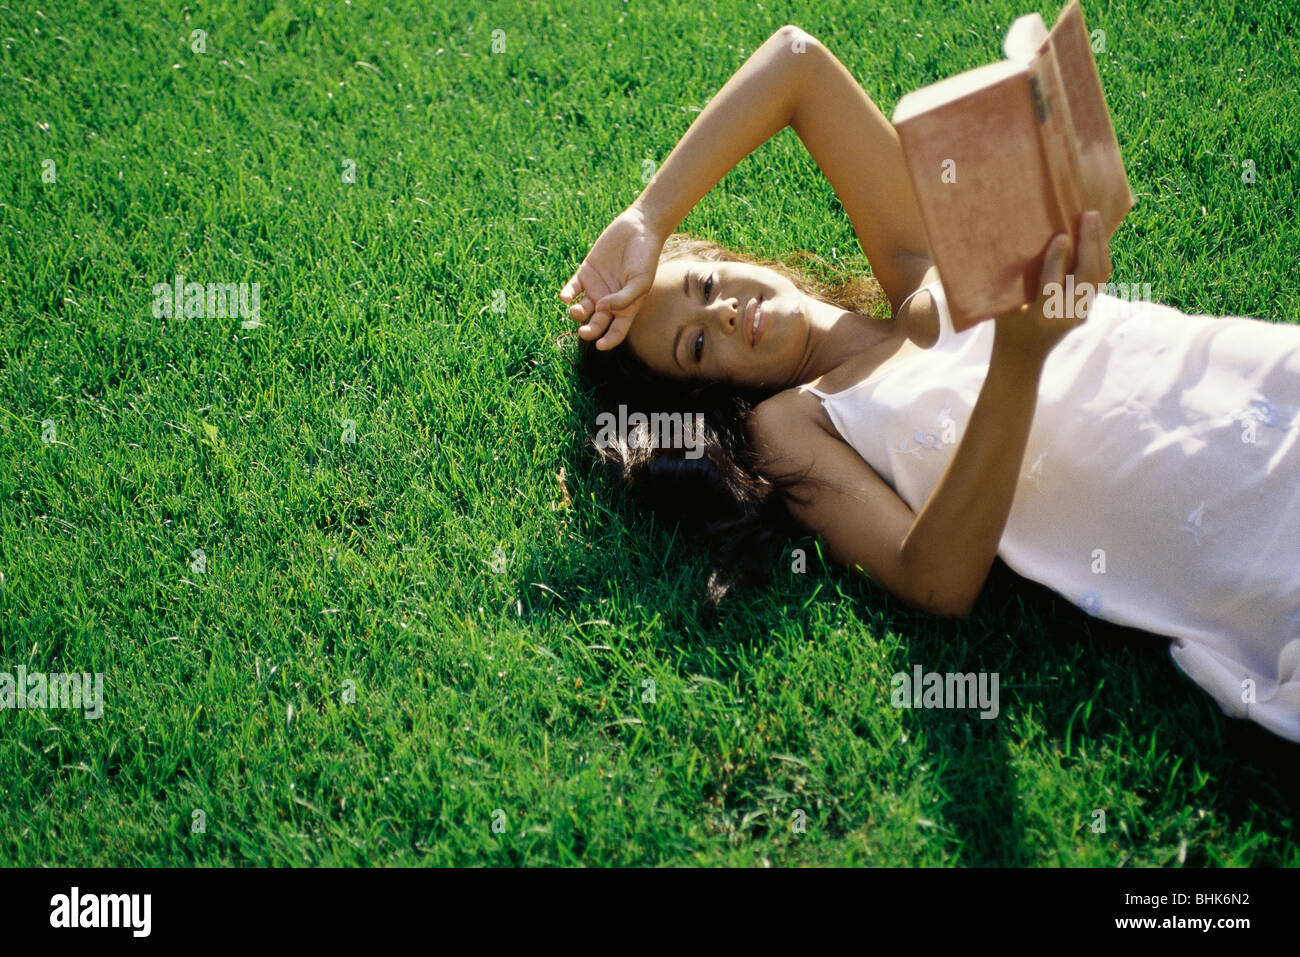 Giovane donna sdraiata su erba, azienda prenota, sorridente in telecamera Foto Stock